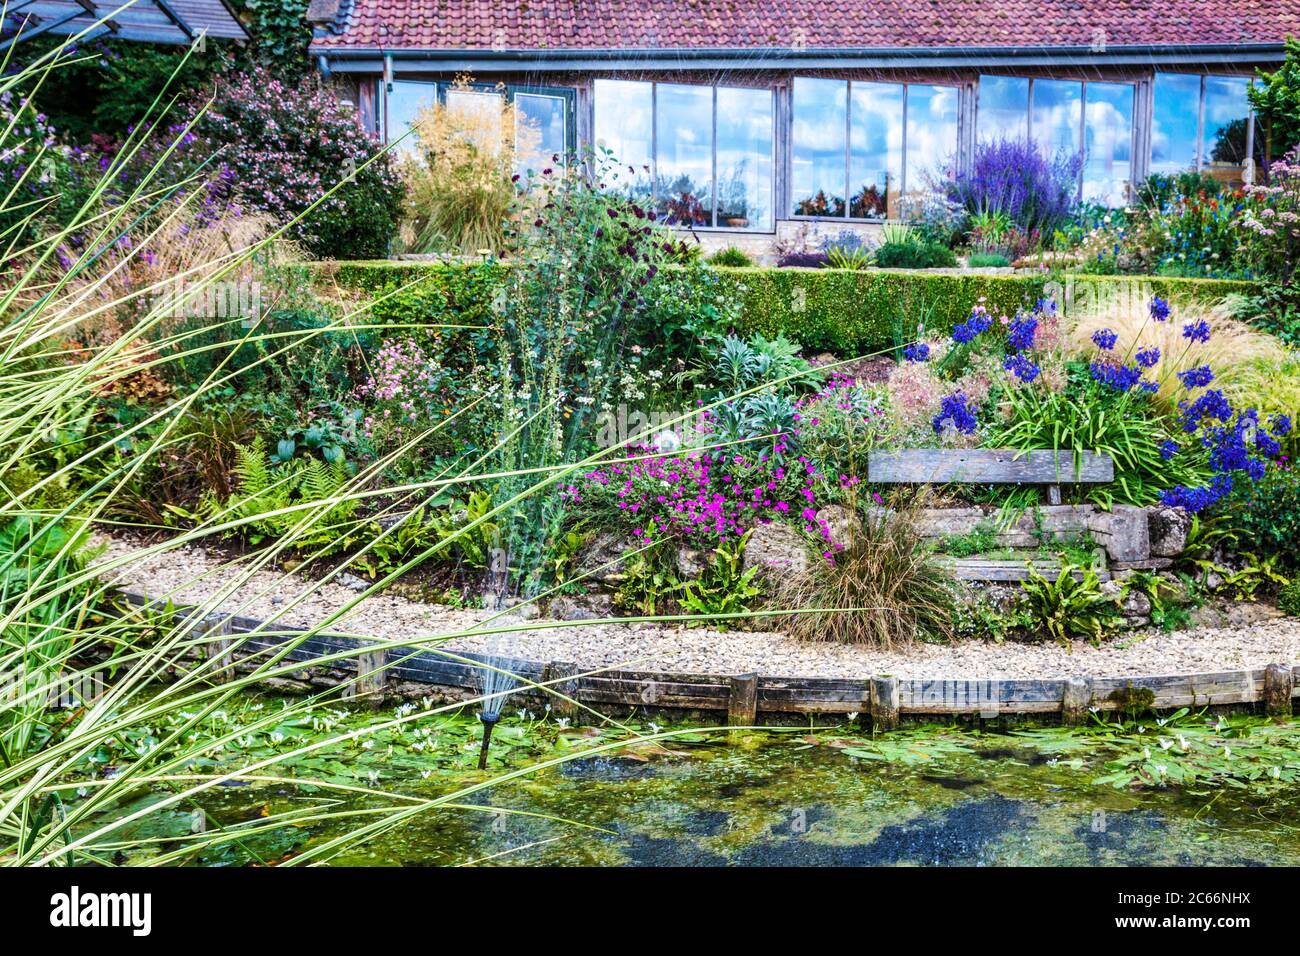 Un étang de jardin ornemental et des bordures herbacées en terrasse dans un jardin de campagne anglais. Banque D'Images